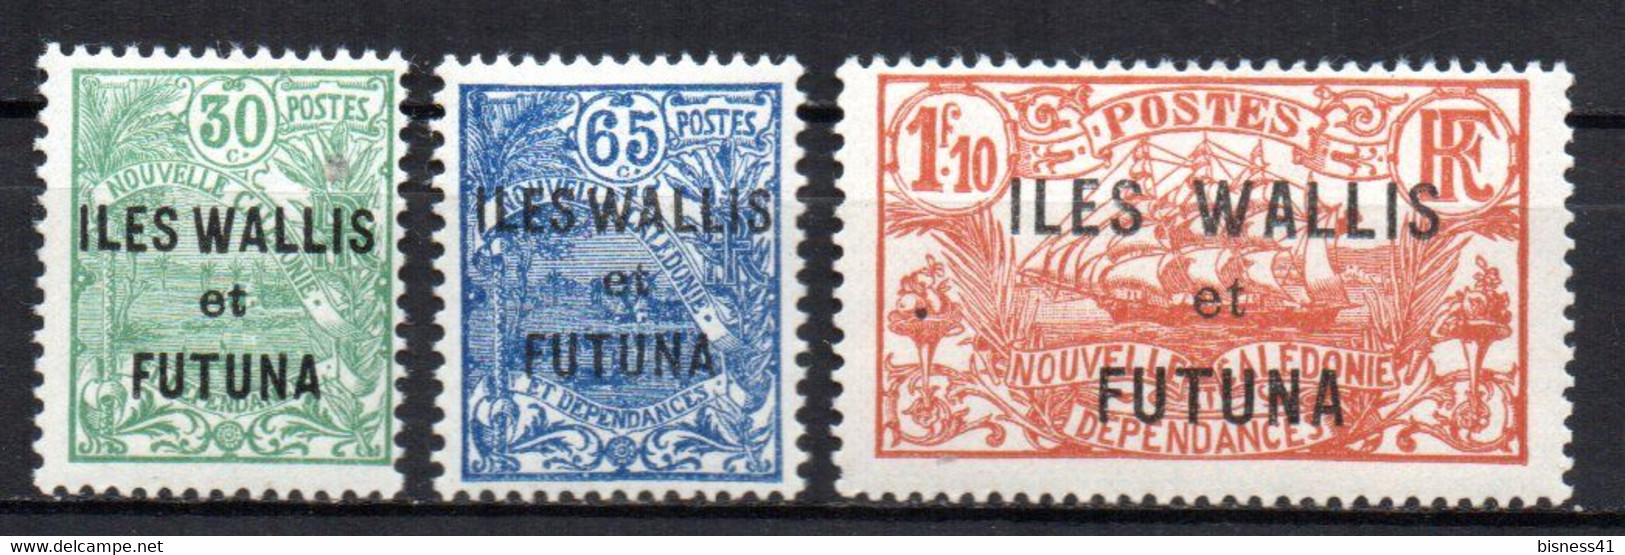 Col17  Colonie Wallis & Futuna N° 40 à 42 Neuf X MH  Cote 15,75 € - Neufs